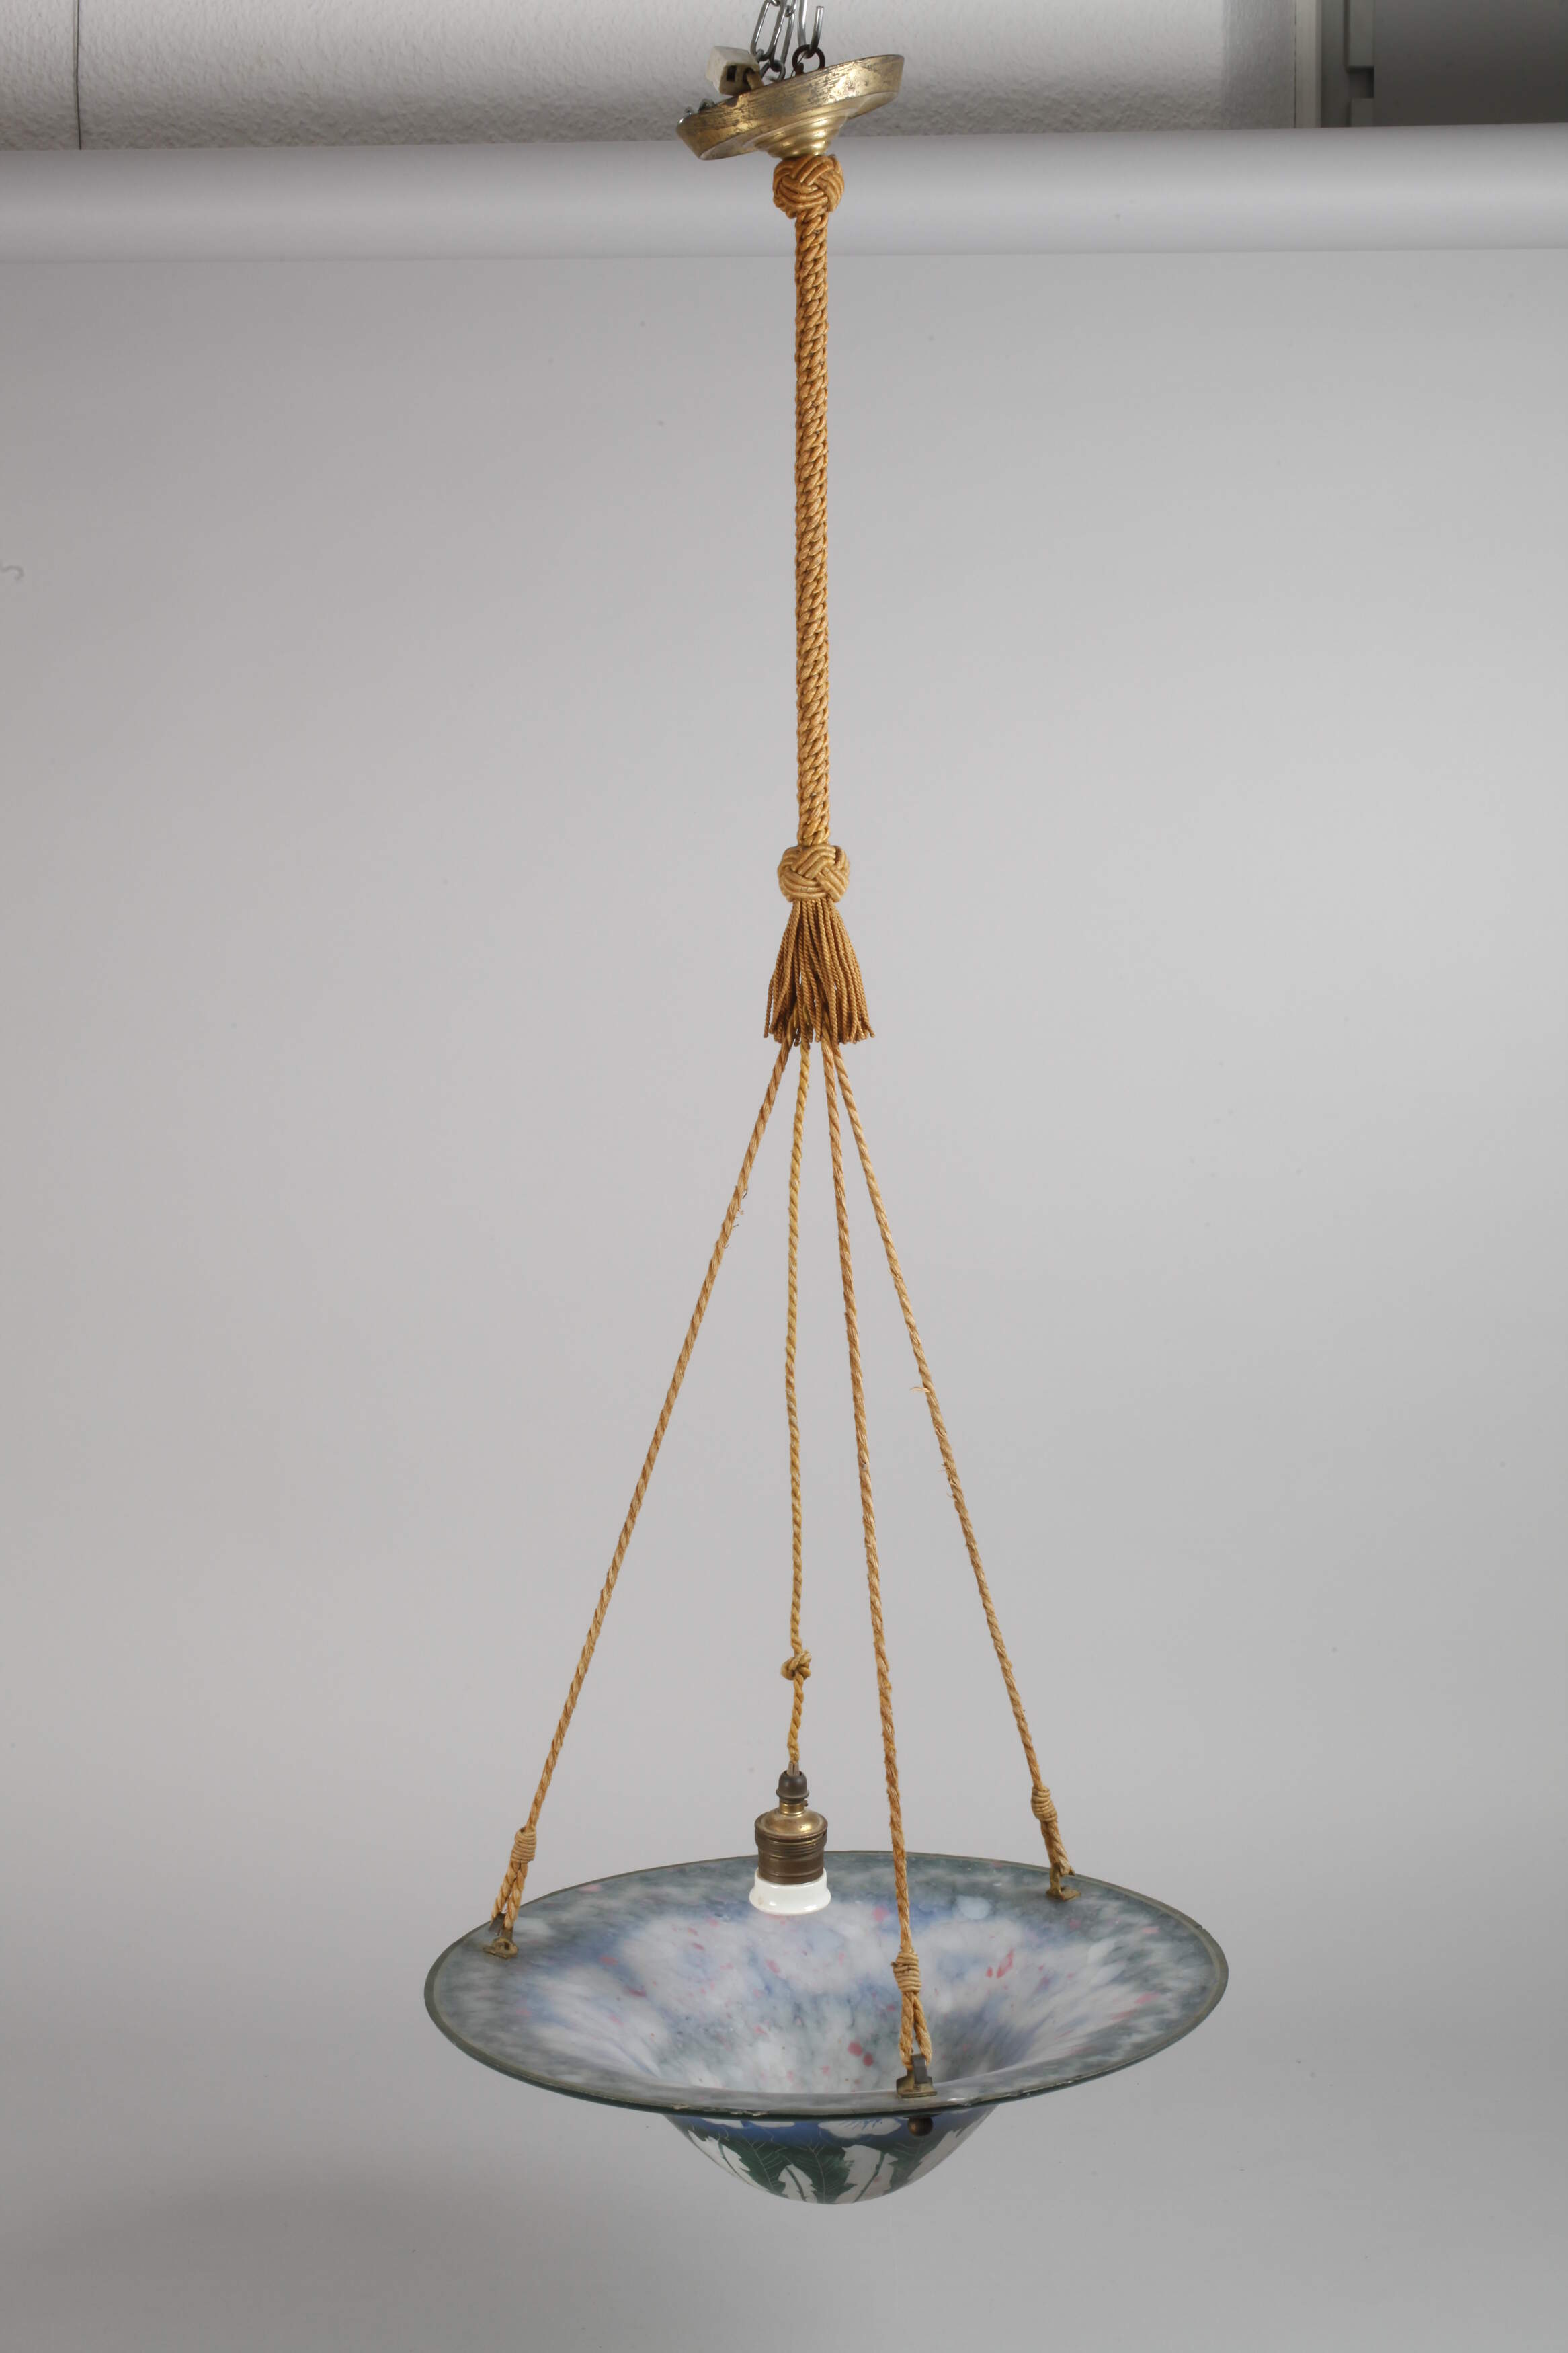 Art Nouveau ceiling lamp - Image 2 of 4